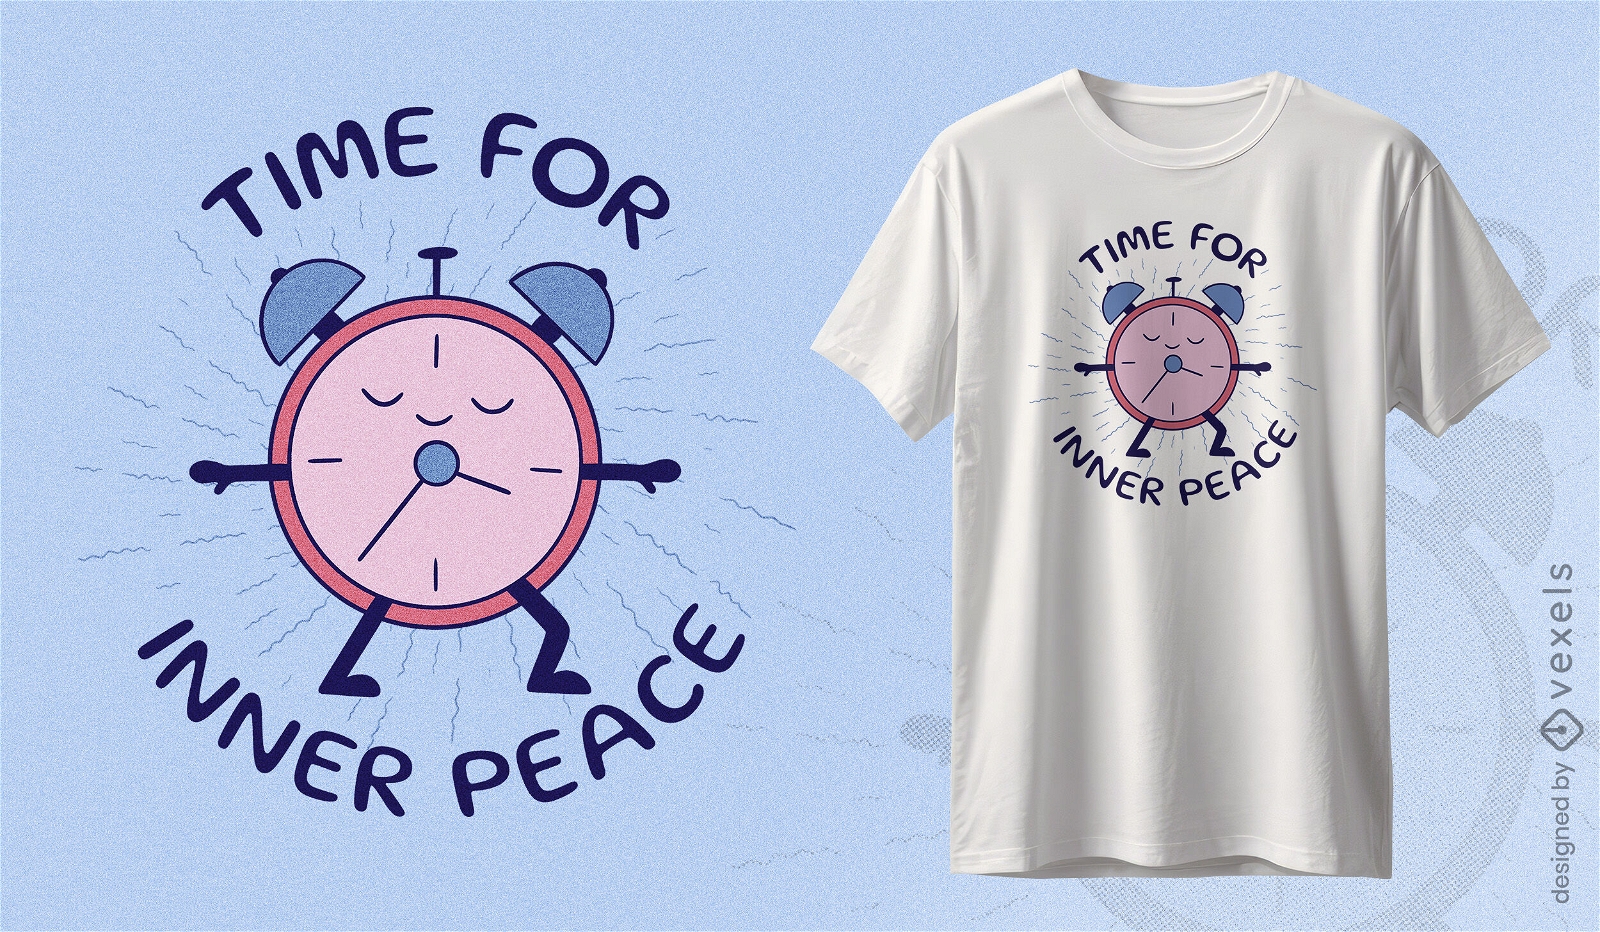 Es hora del dise?o de camiseta del reloj de la paz interior.